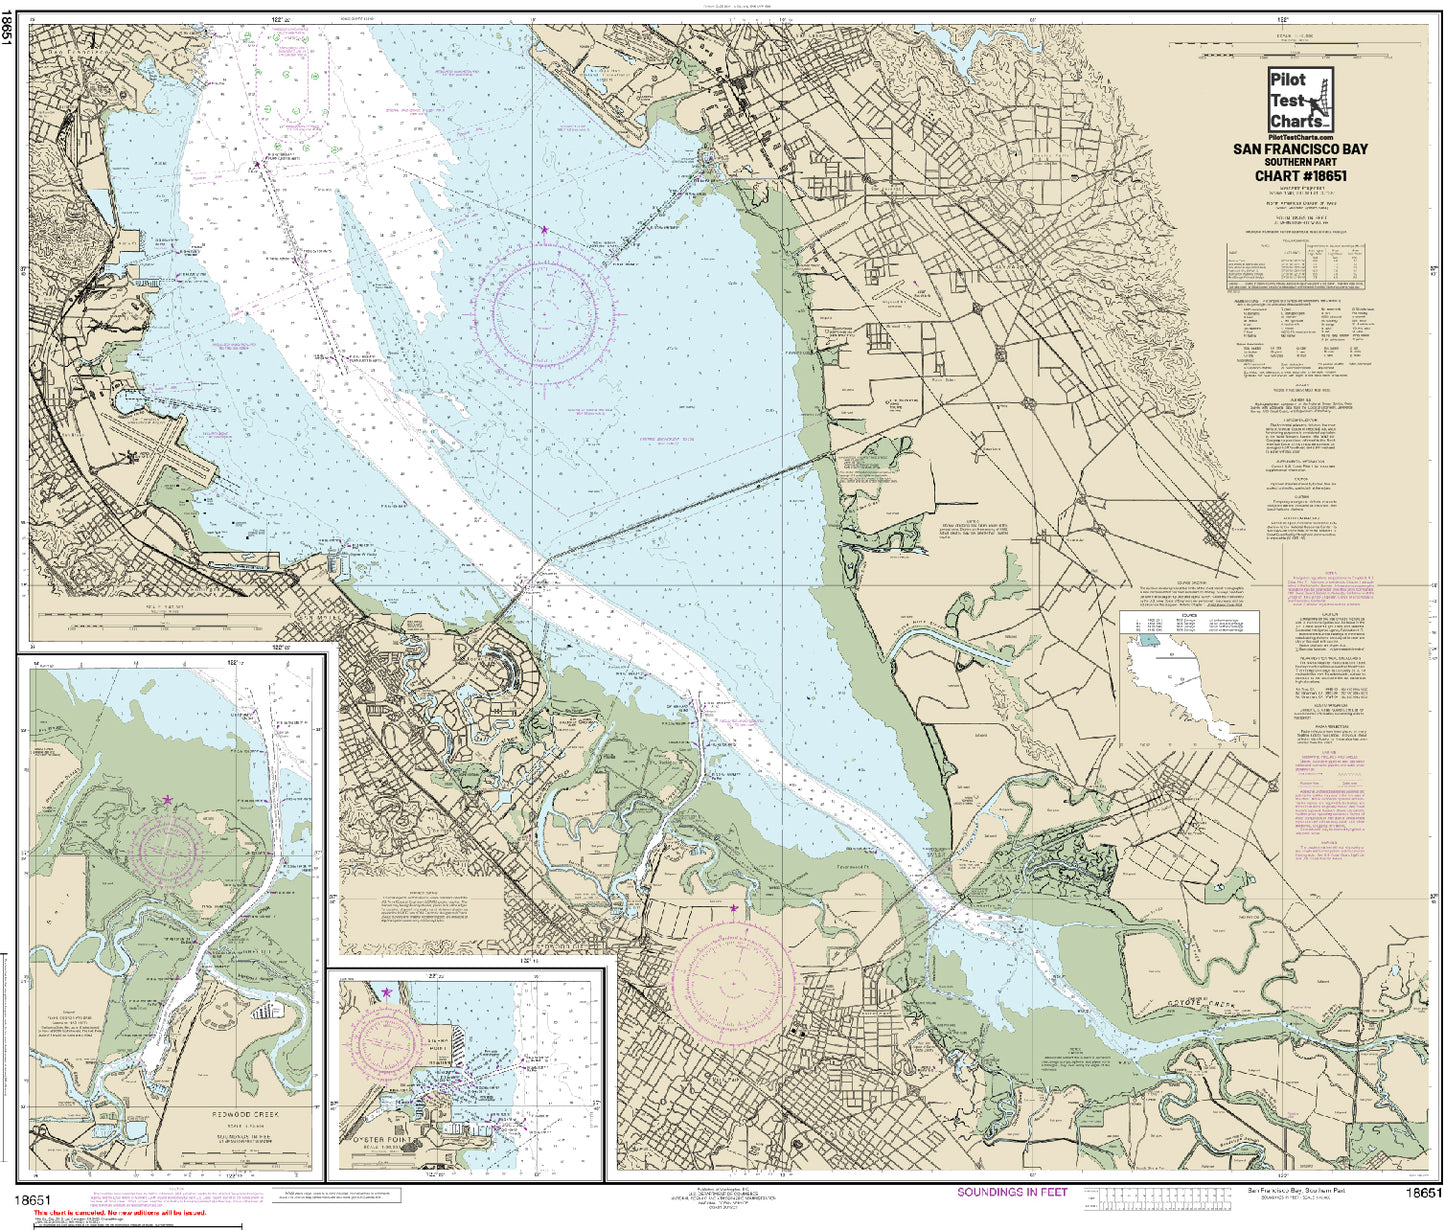 #18651 San Francisco Bay, Southern Part Chart